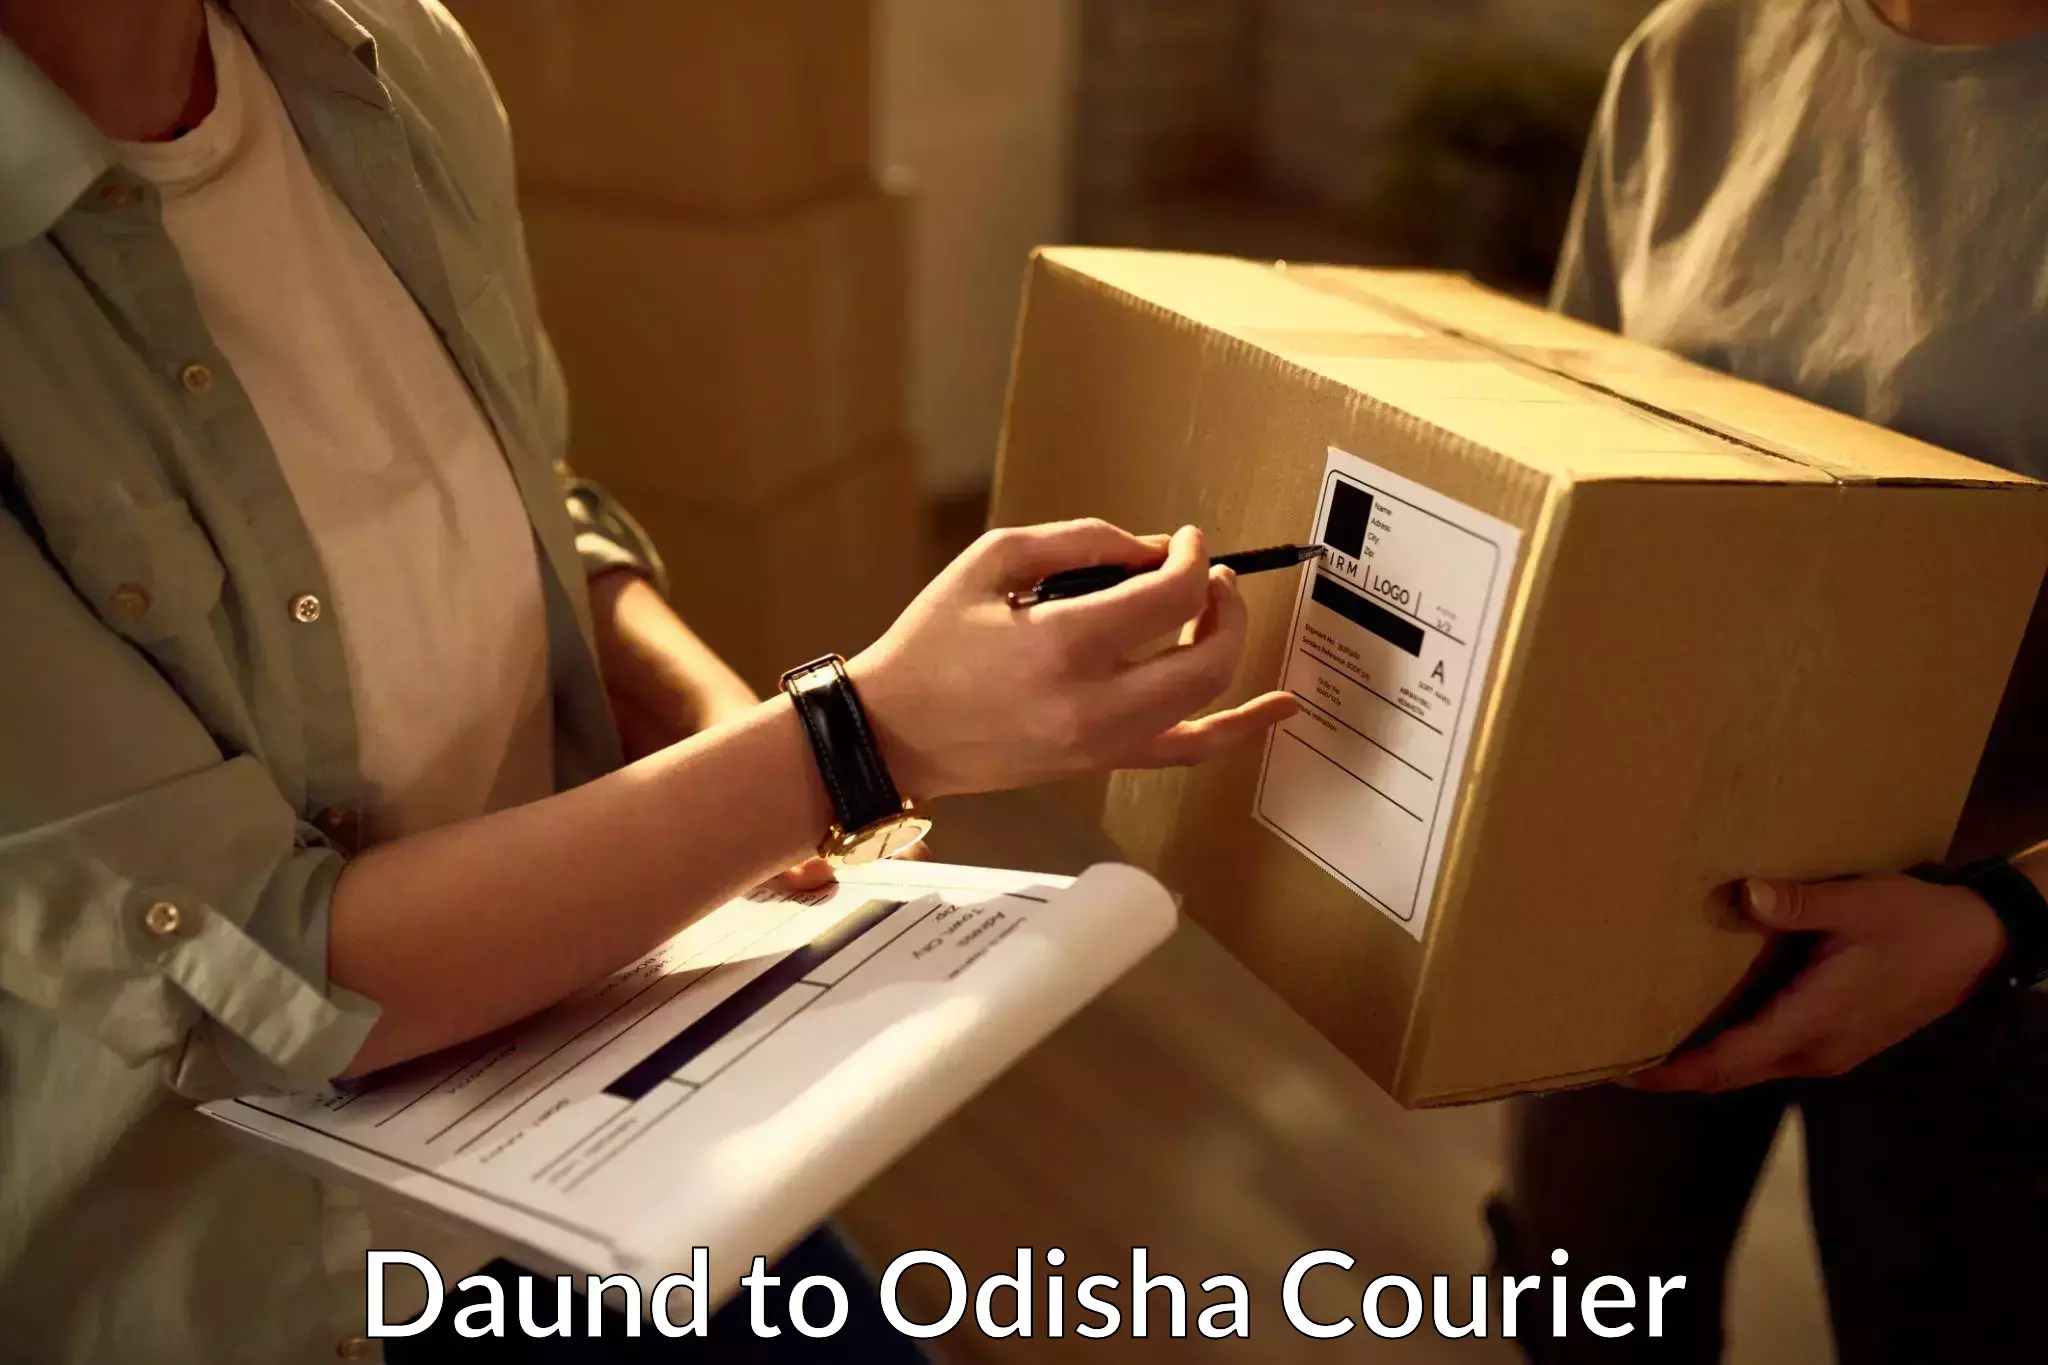 Full-service courier options Daund to Malkangiri